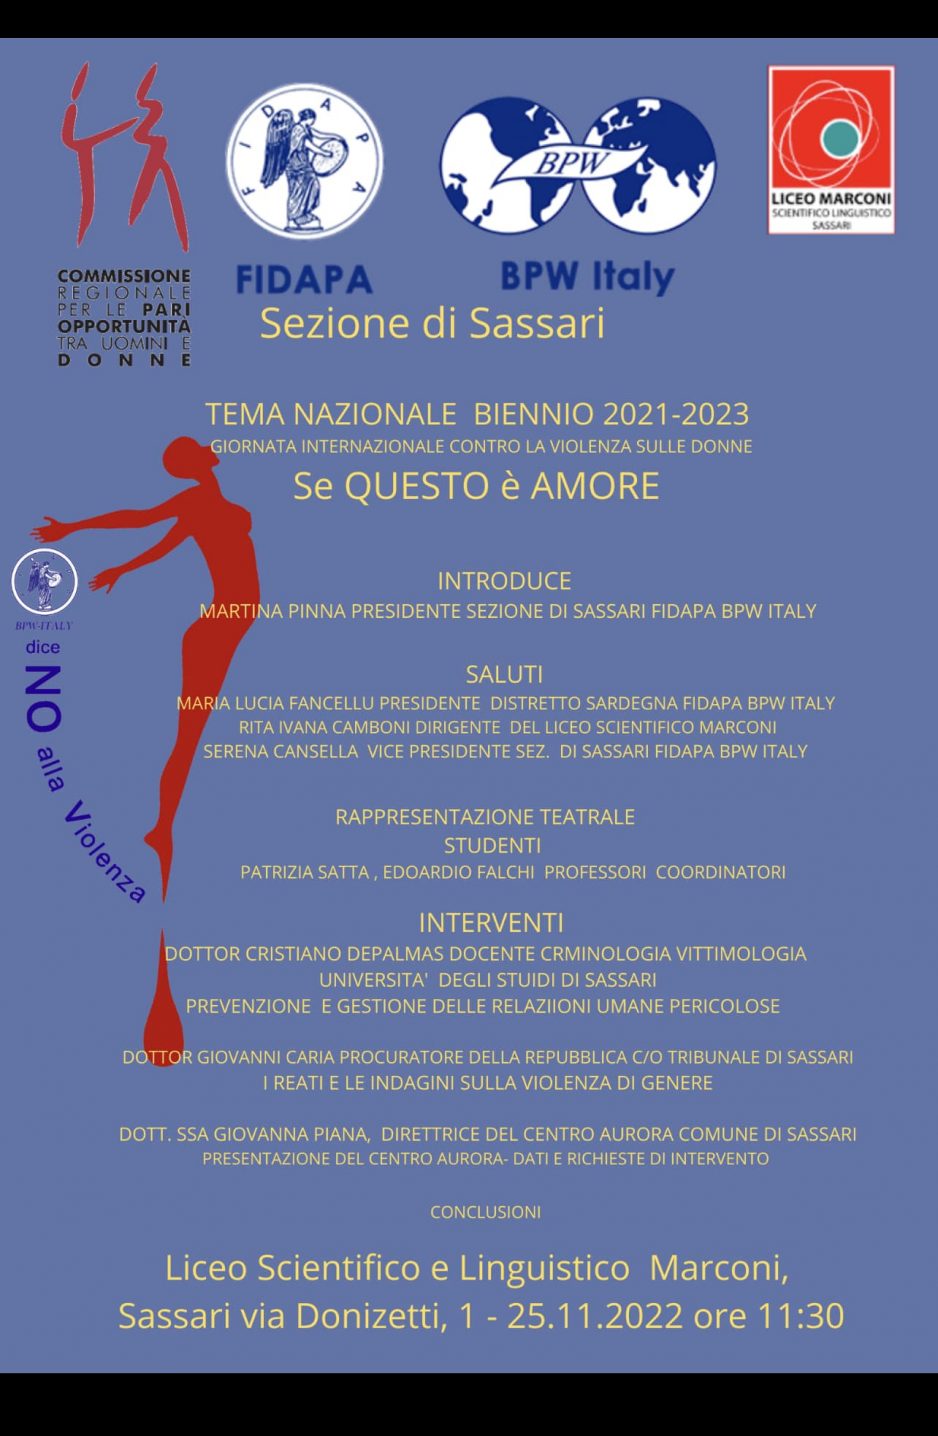 Evento Fidapa Sassari per il 25 novembre: Progetto Aurora tra i relatori